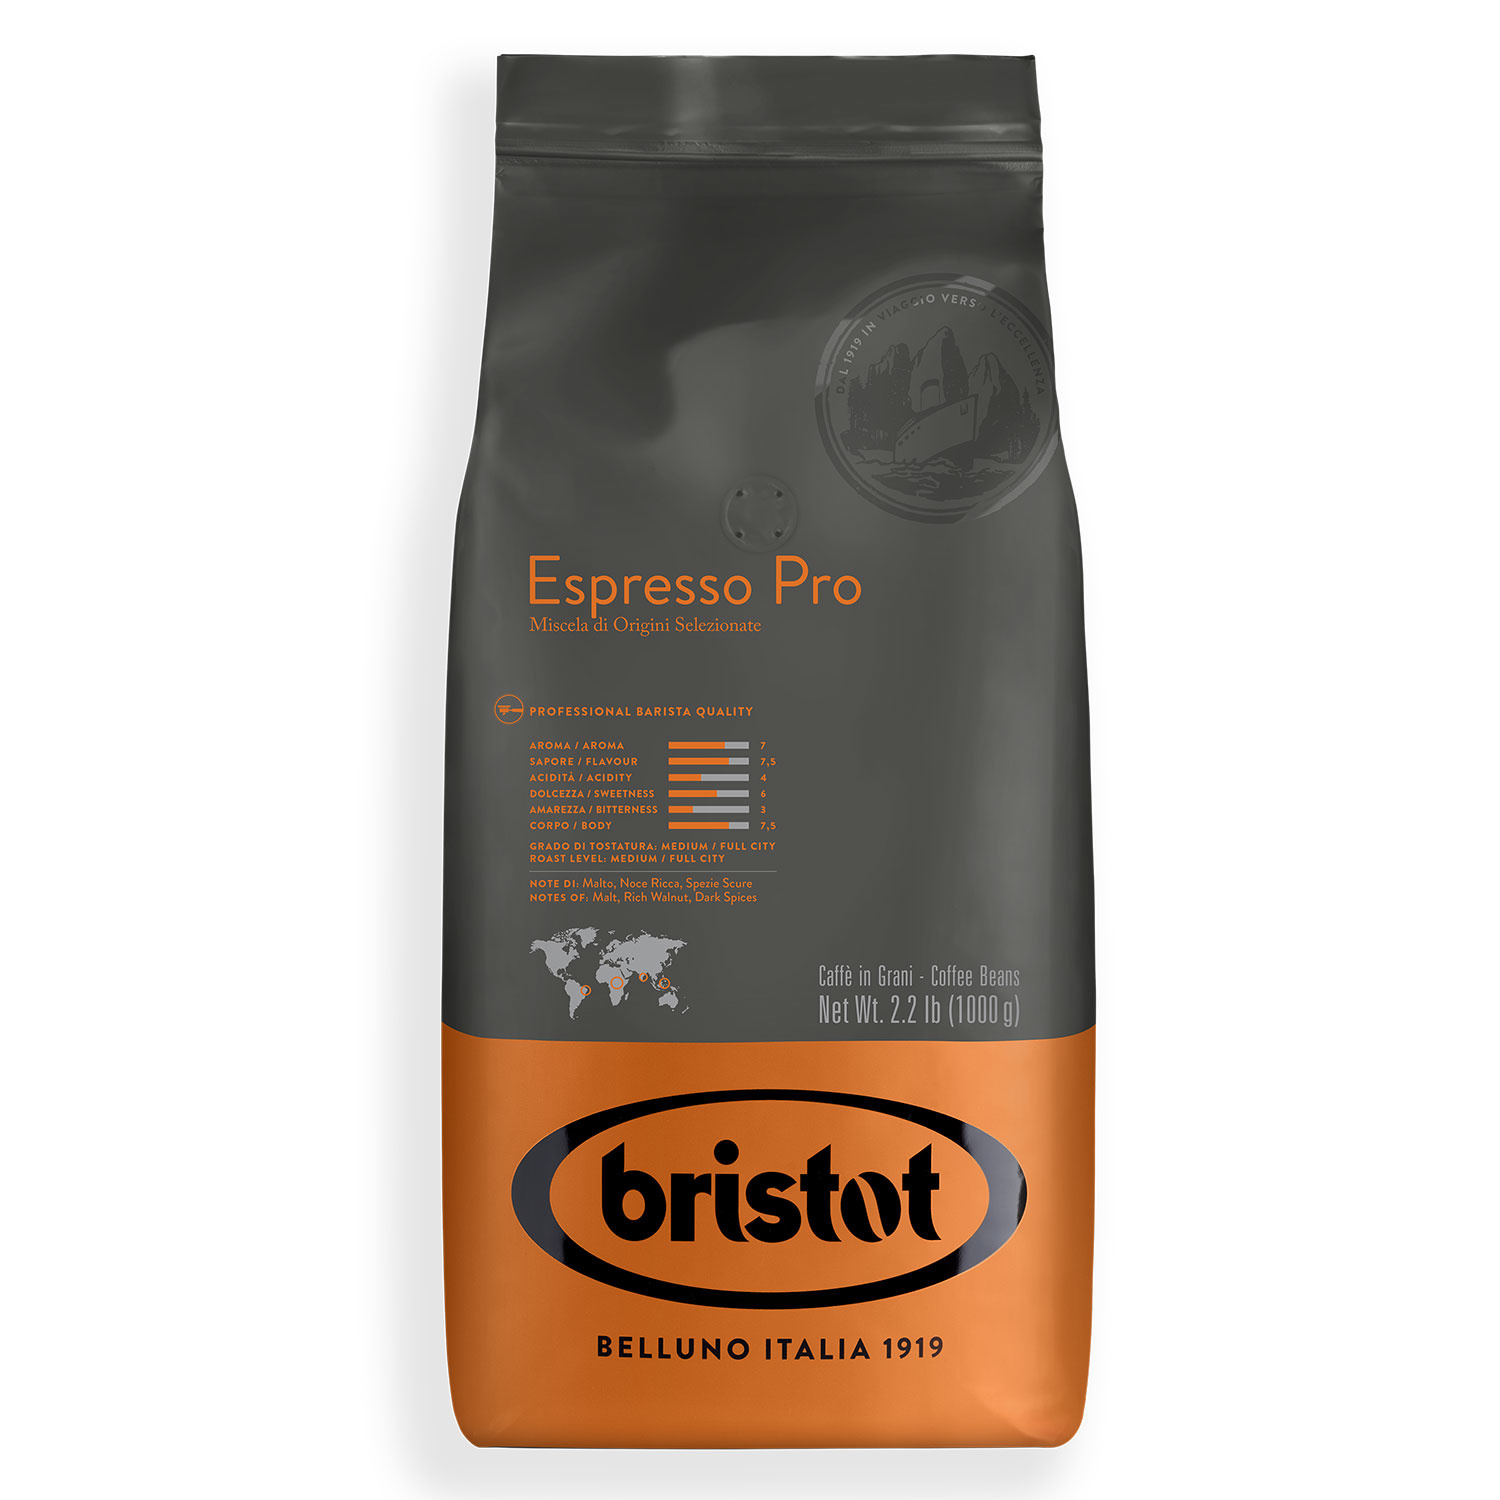 Bristot Espresso Pro bonen 1 kg vanaf € 16.90